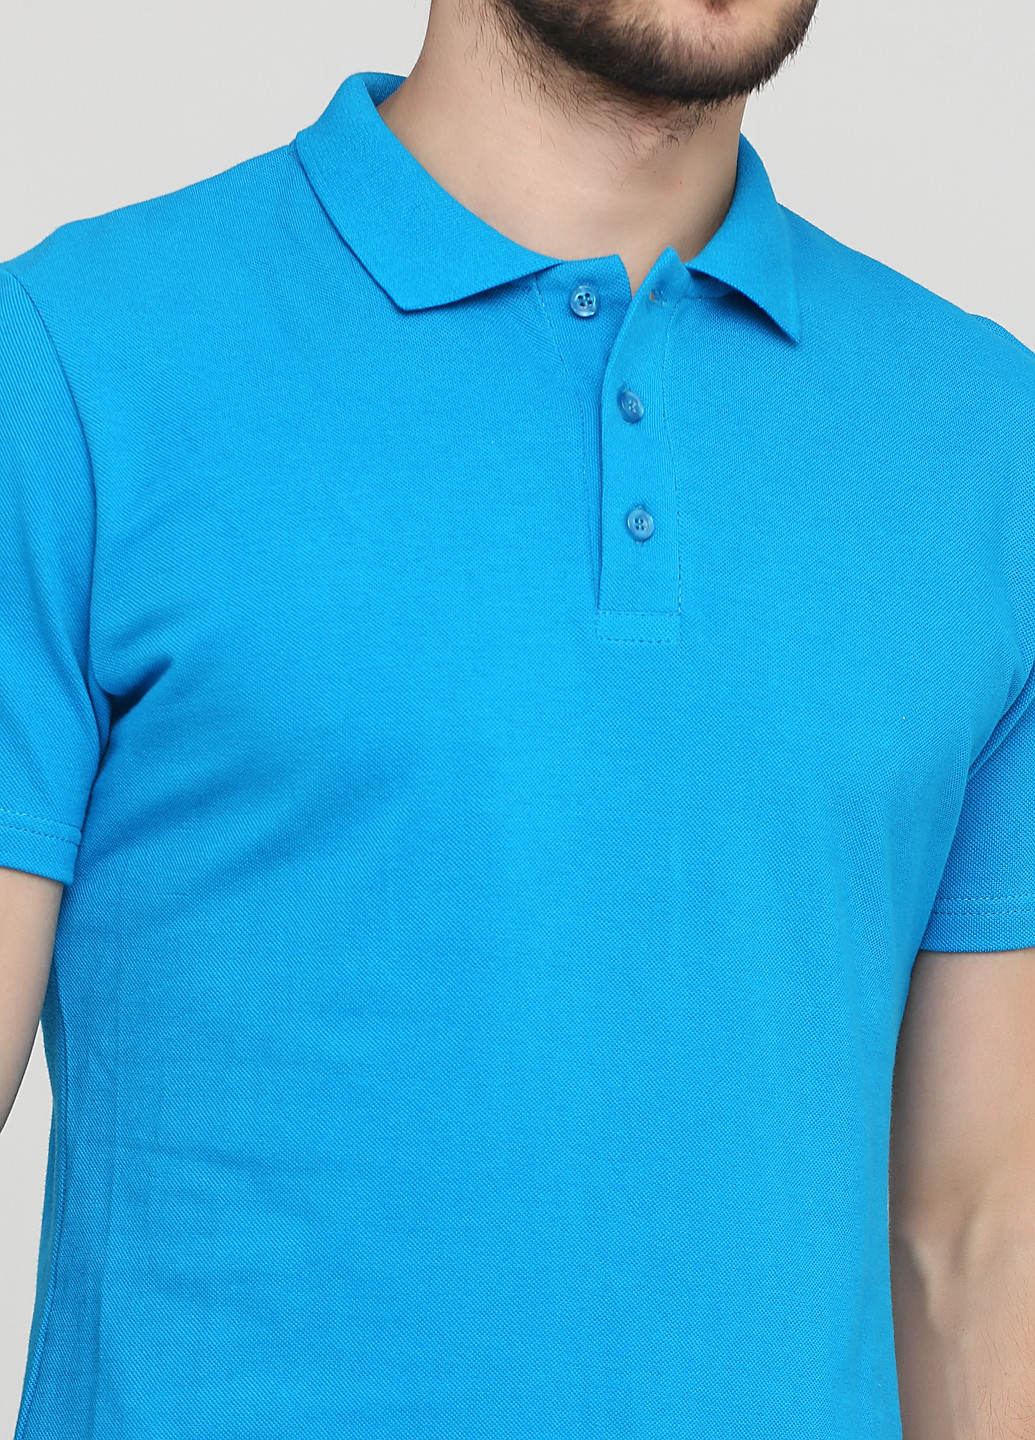 Мужская футболка поло 100% хлопок сине-бирюзовая Melgo поло (202462005)